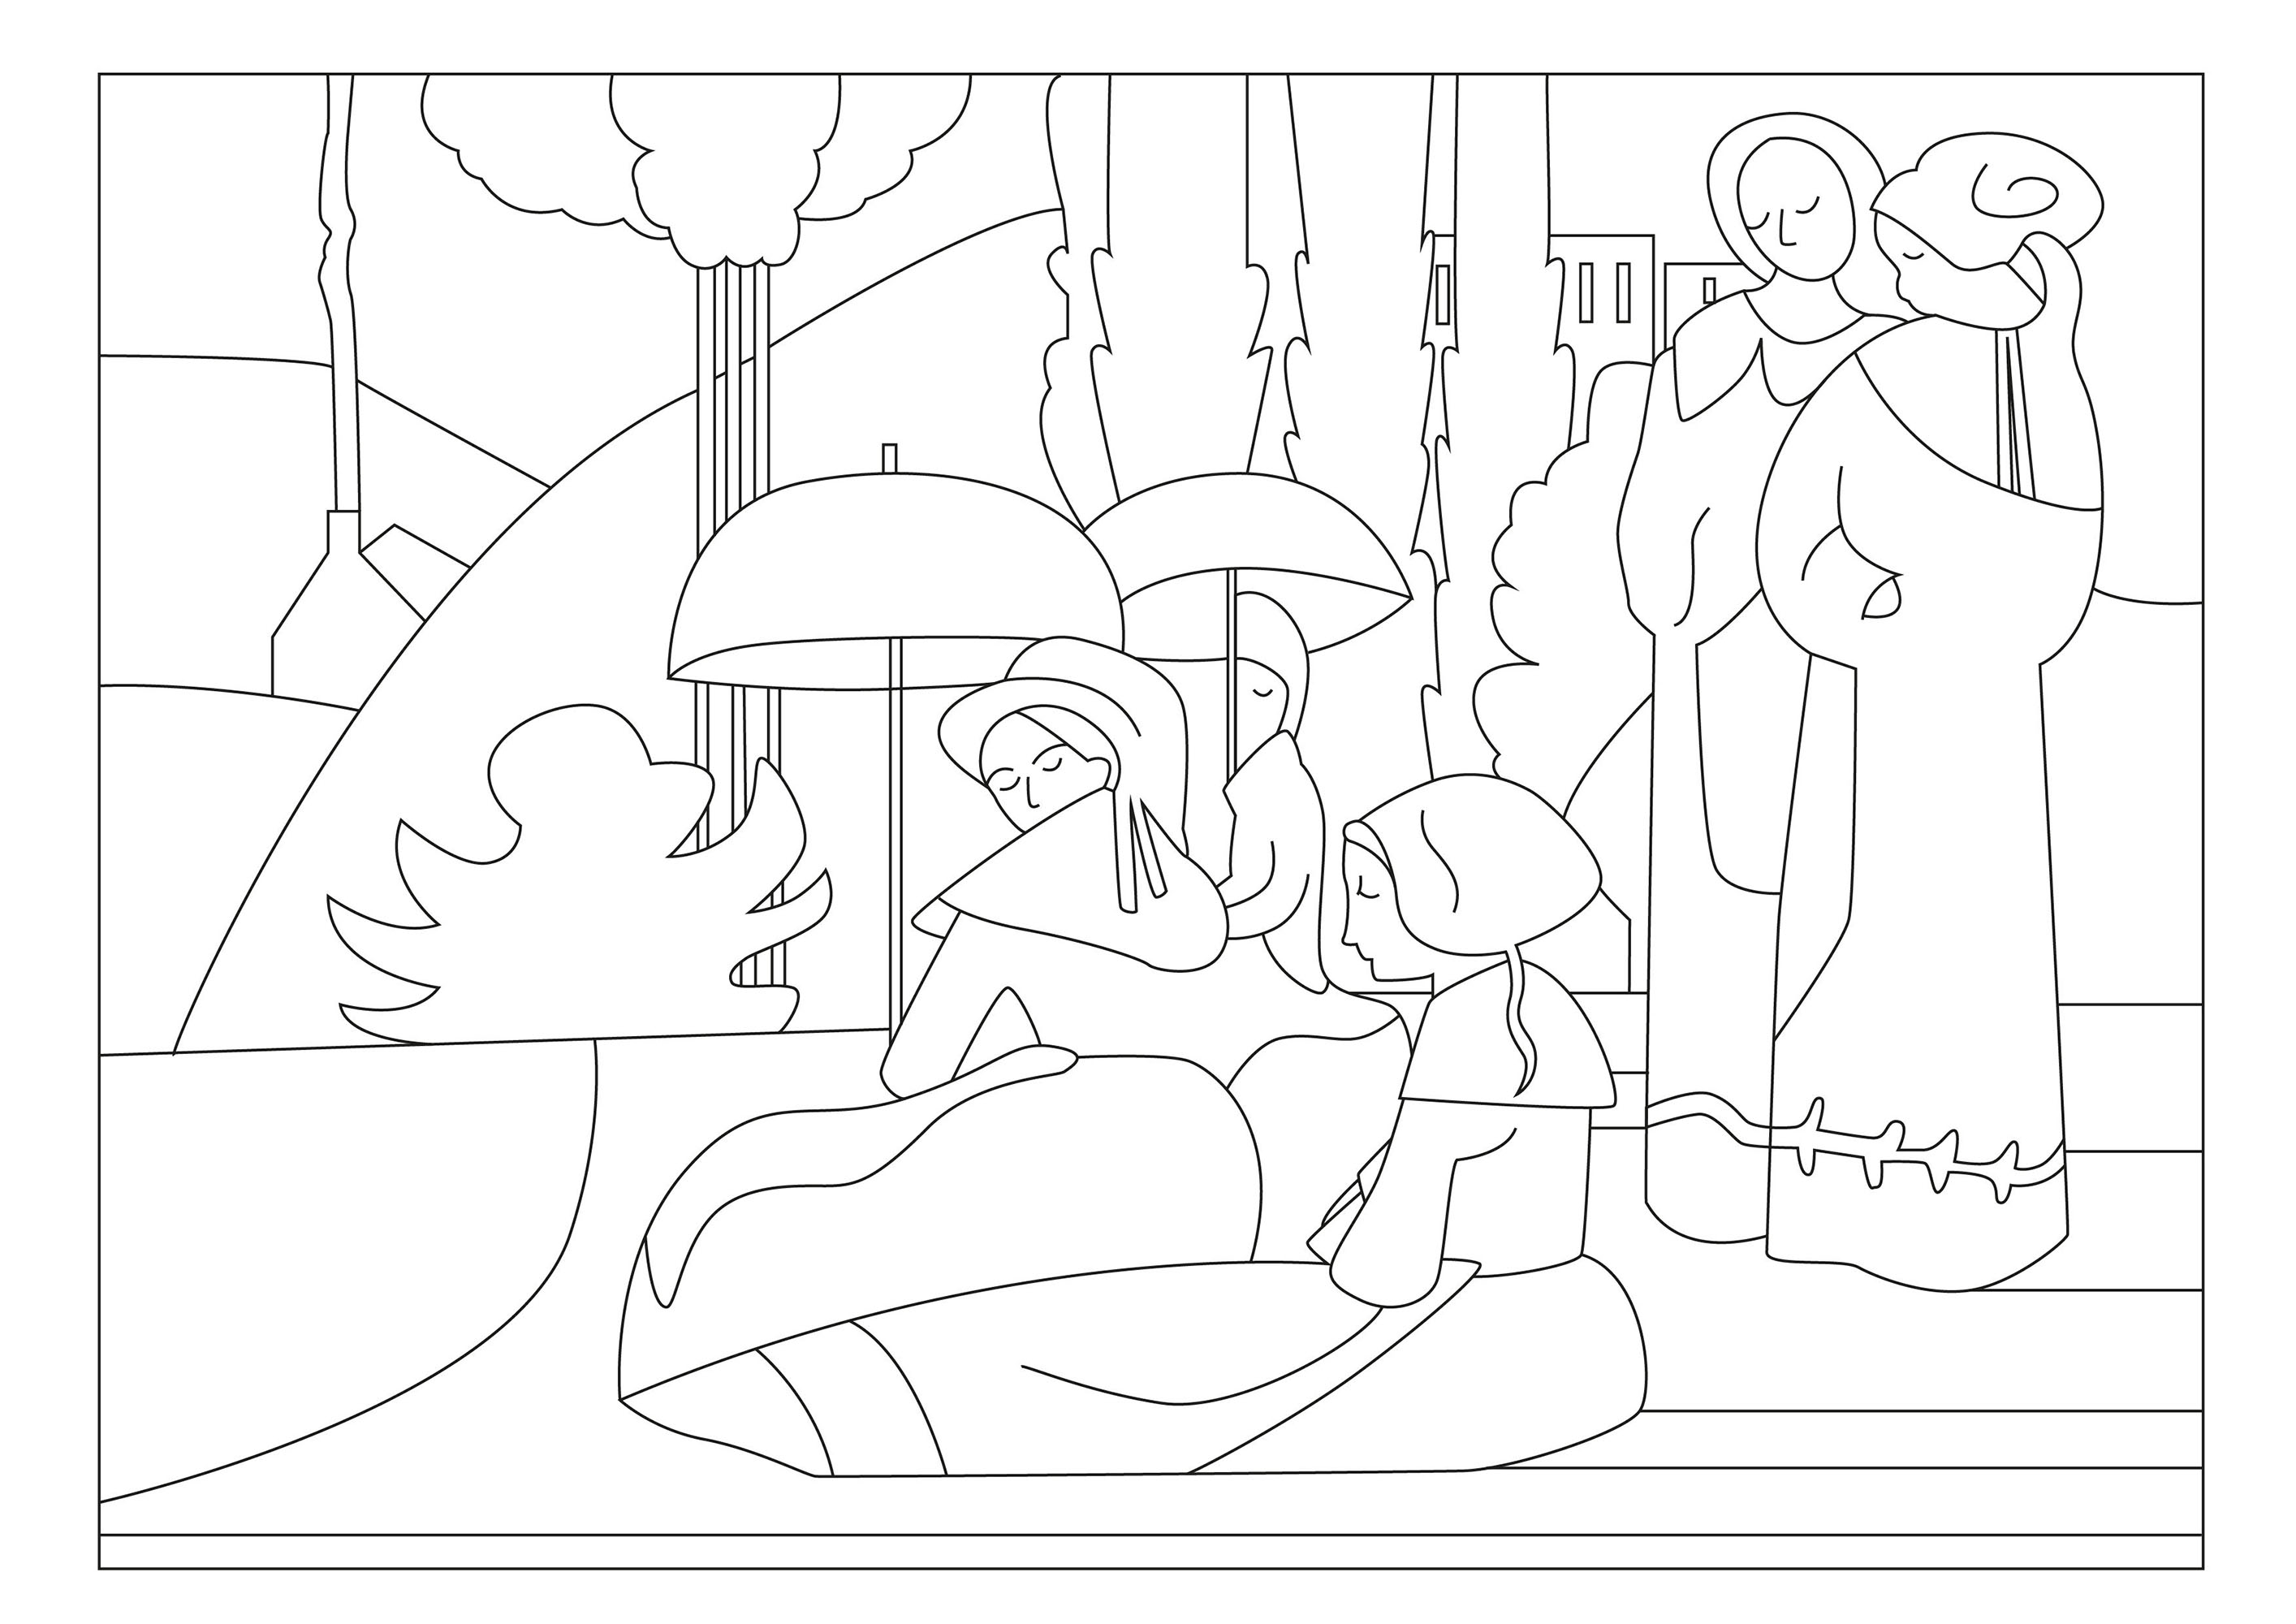 Ausmalbild nach dem Gemälde Bretonische Frauen mit Regenschirmen (1892) von Emilie Bernard. Dieses Gemälde zeigt eine Gruppe bretonischer Frauen in ihren traditionellen Trachten, die im strahlenden Sonnenschein spazieren gehen, wobei jede einen Regenschirm in der Hand hält, um sich vor den sengenden Strahlen zu schützen, Künstler : Gaelle Picard